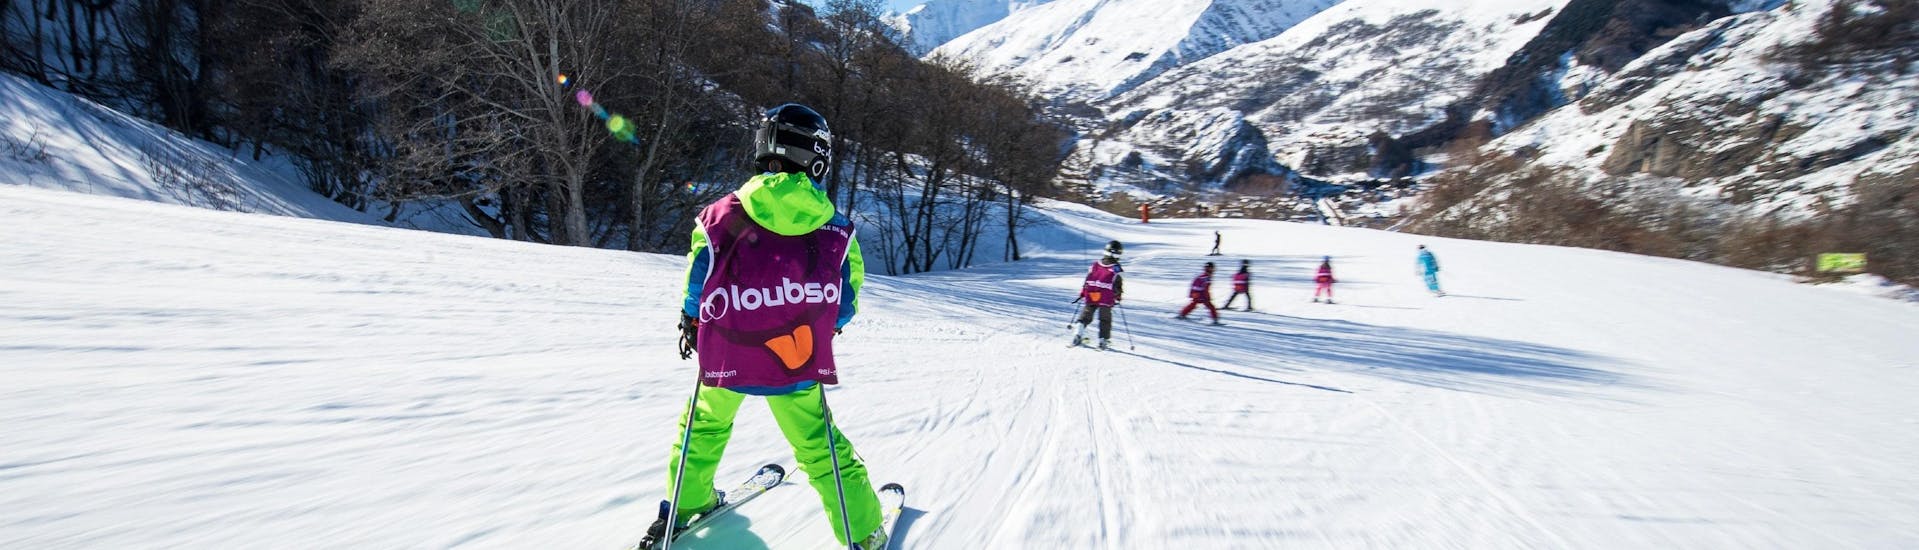 Lezioni di sci per bambini a partire da 5 anni per principianti.